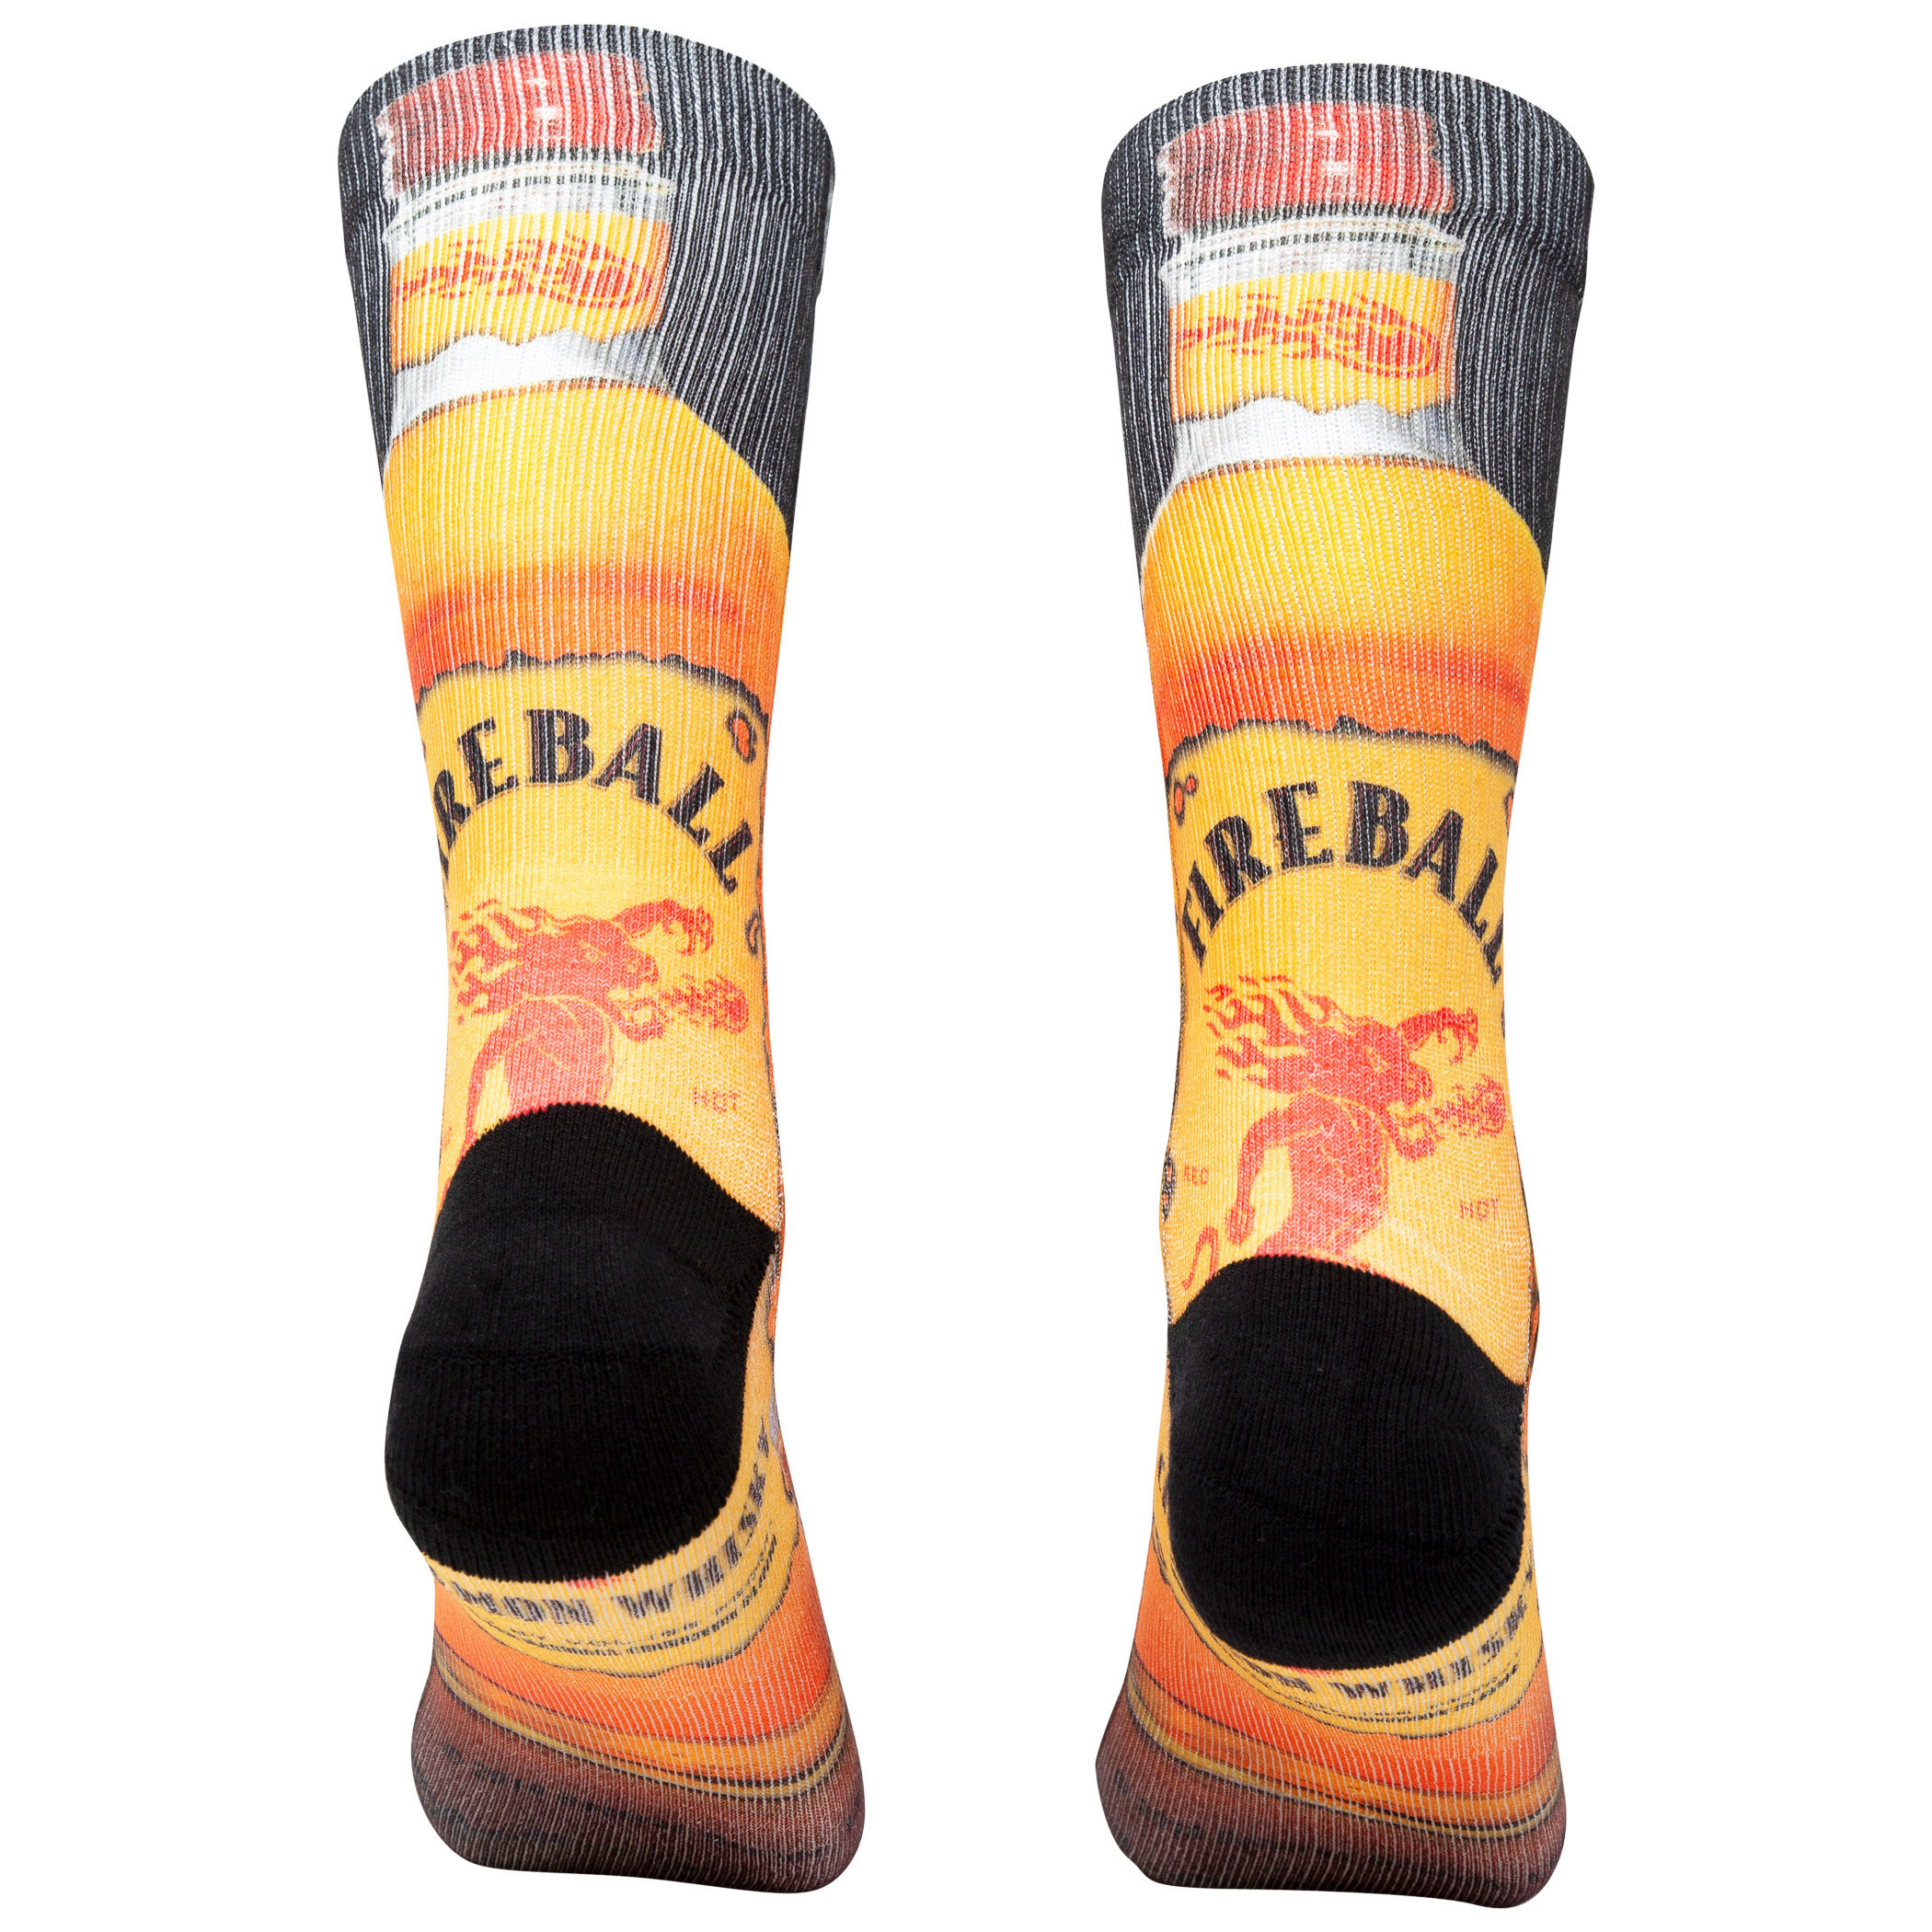 Fireball Whiskey Bottle Print Socks